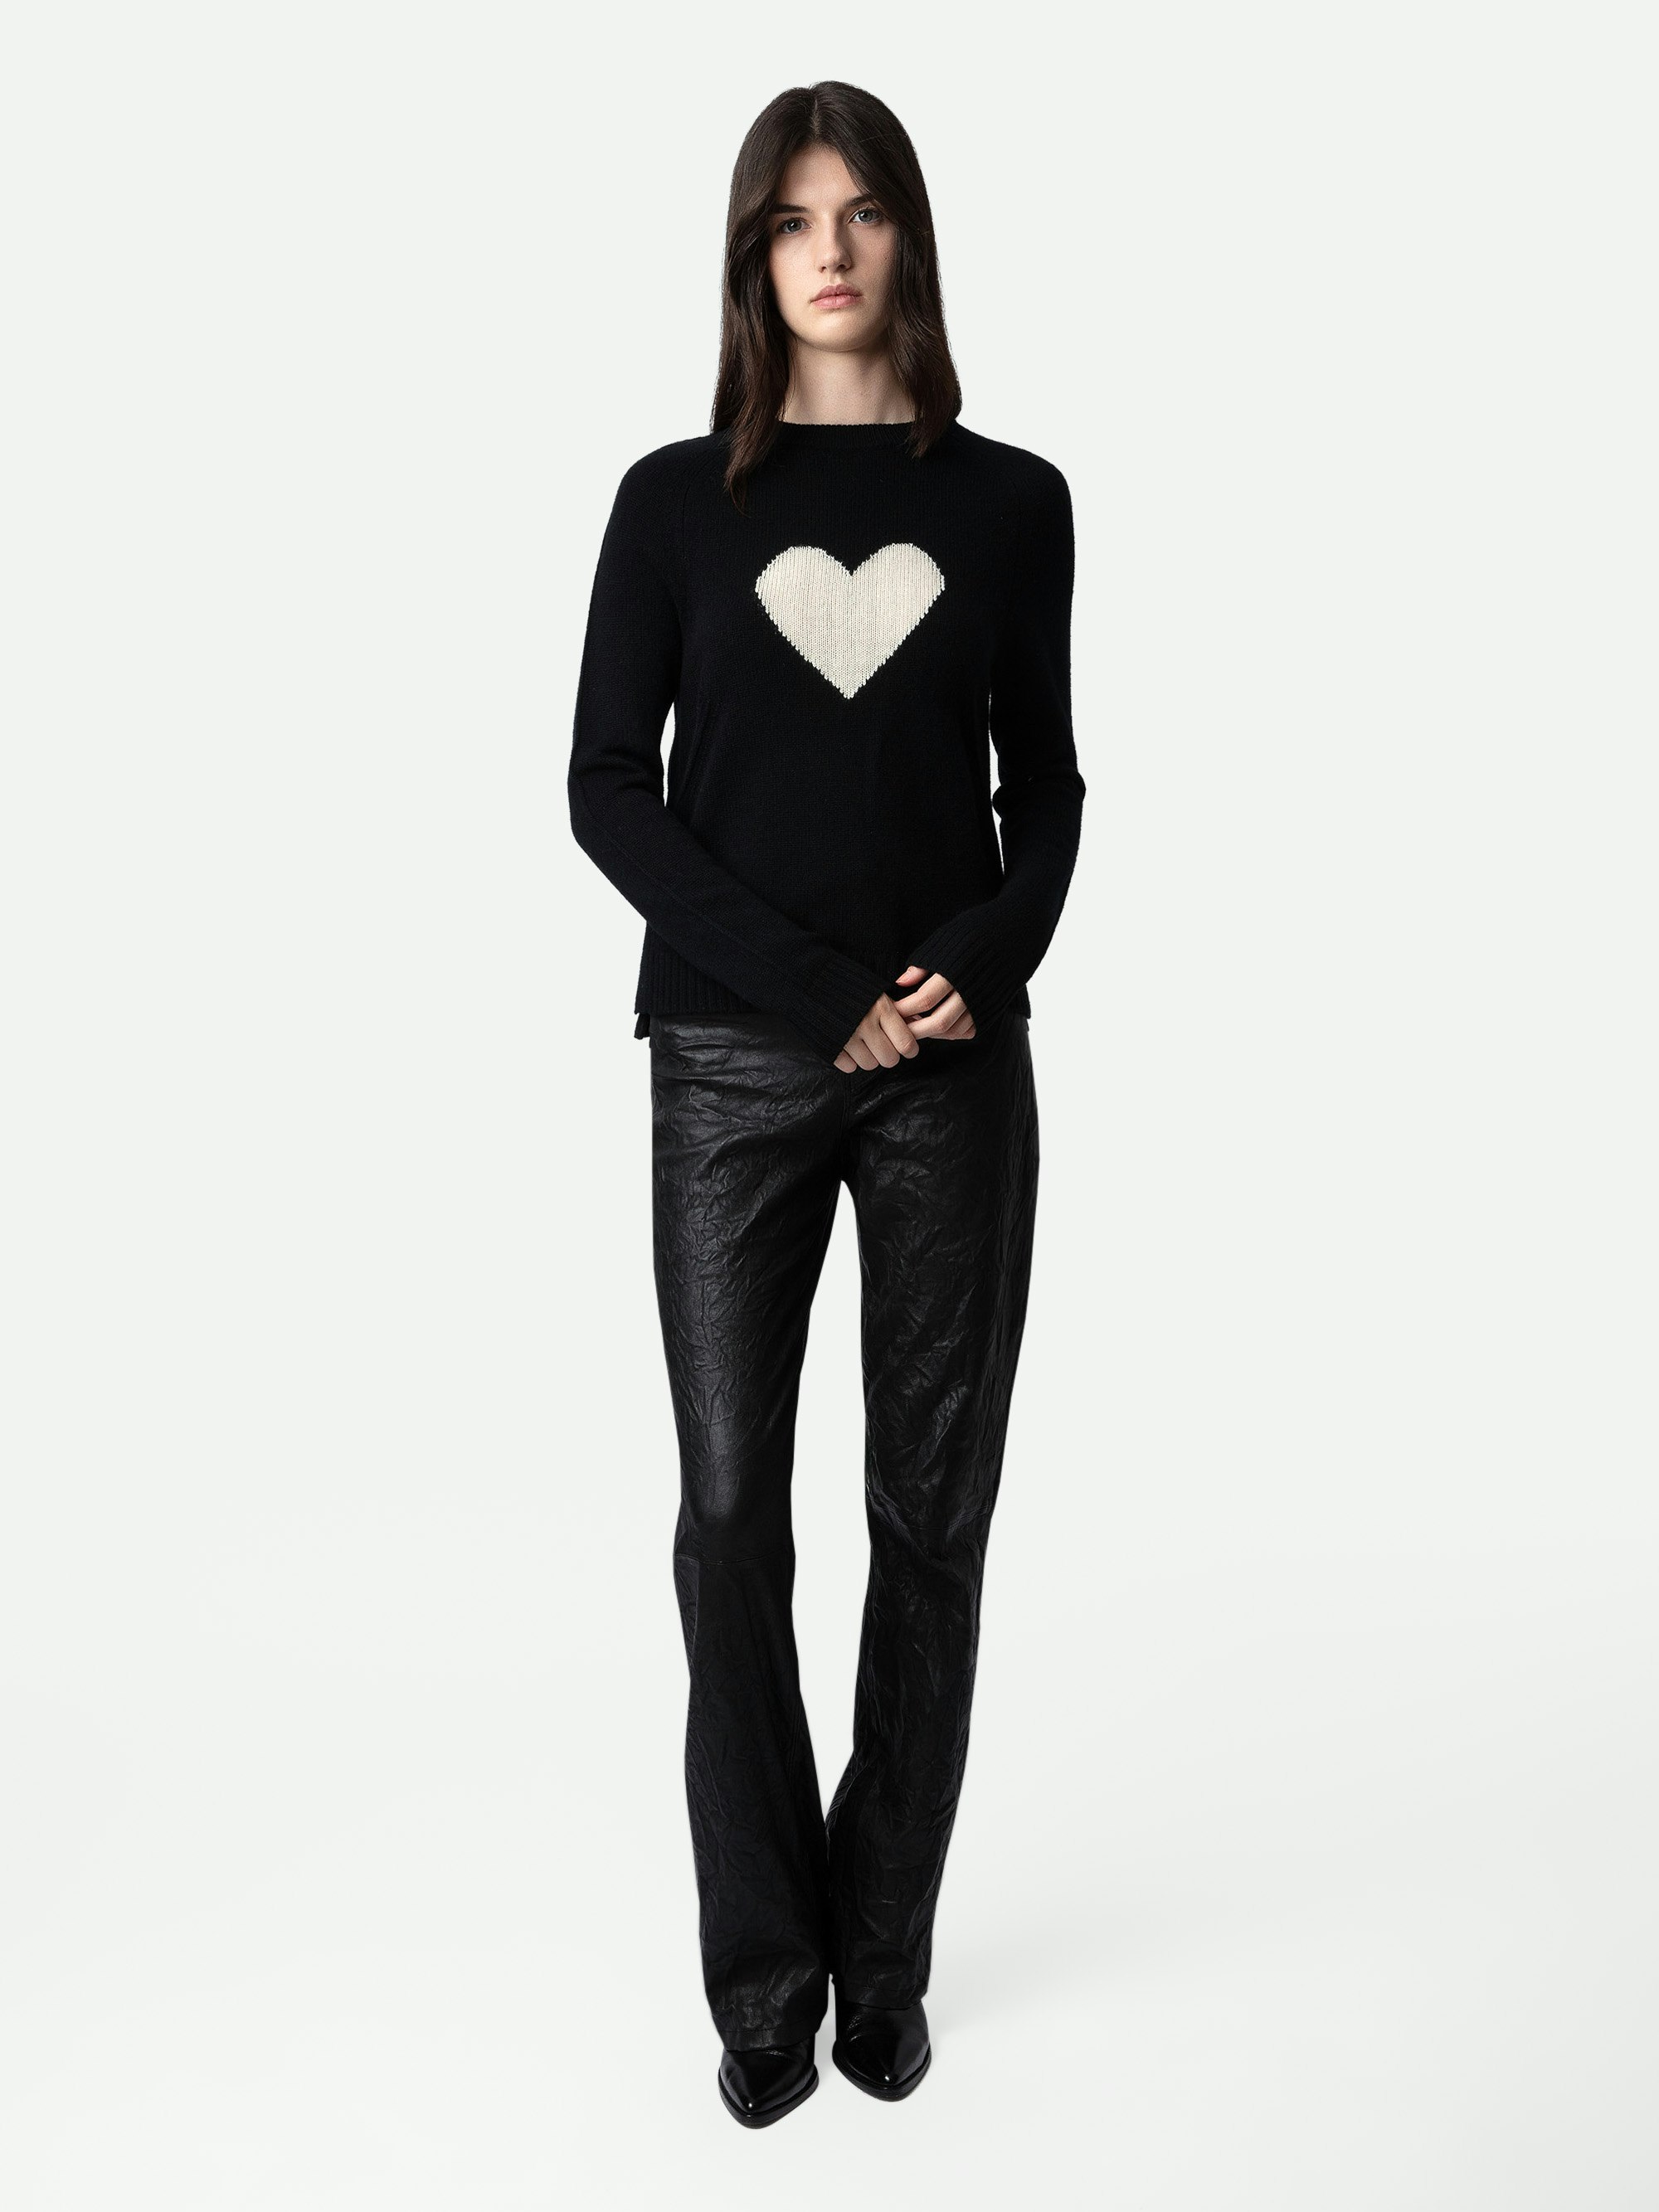 Maglione Lili 100% Cachemire - Maglione in 100% cachemire nero decorato con un cuore sul davanti.